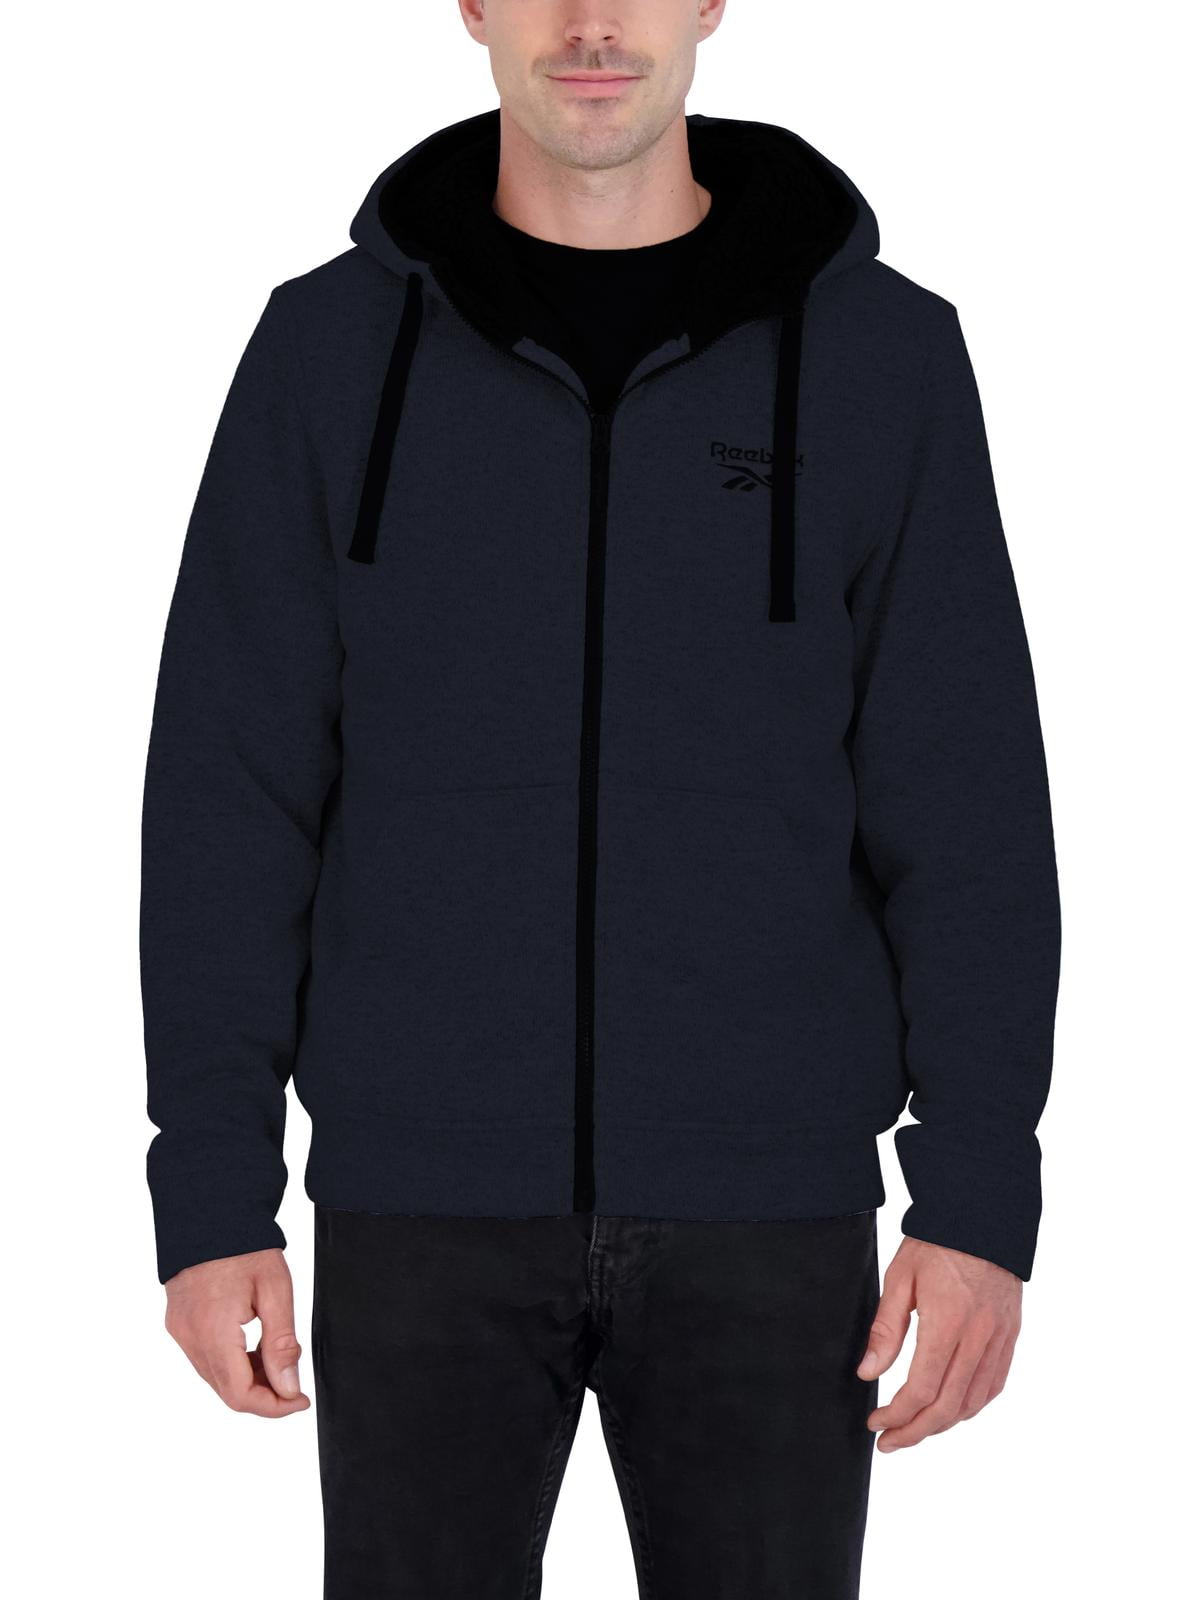 Reebok Men’s Sherpa Lined Full-Zip Hooded Jacket - Walmart.com